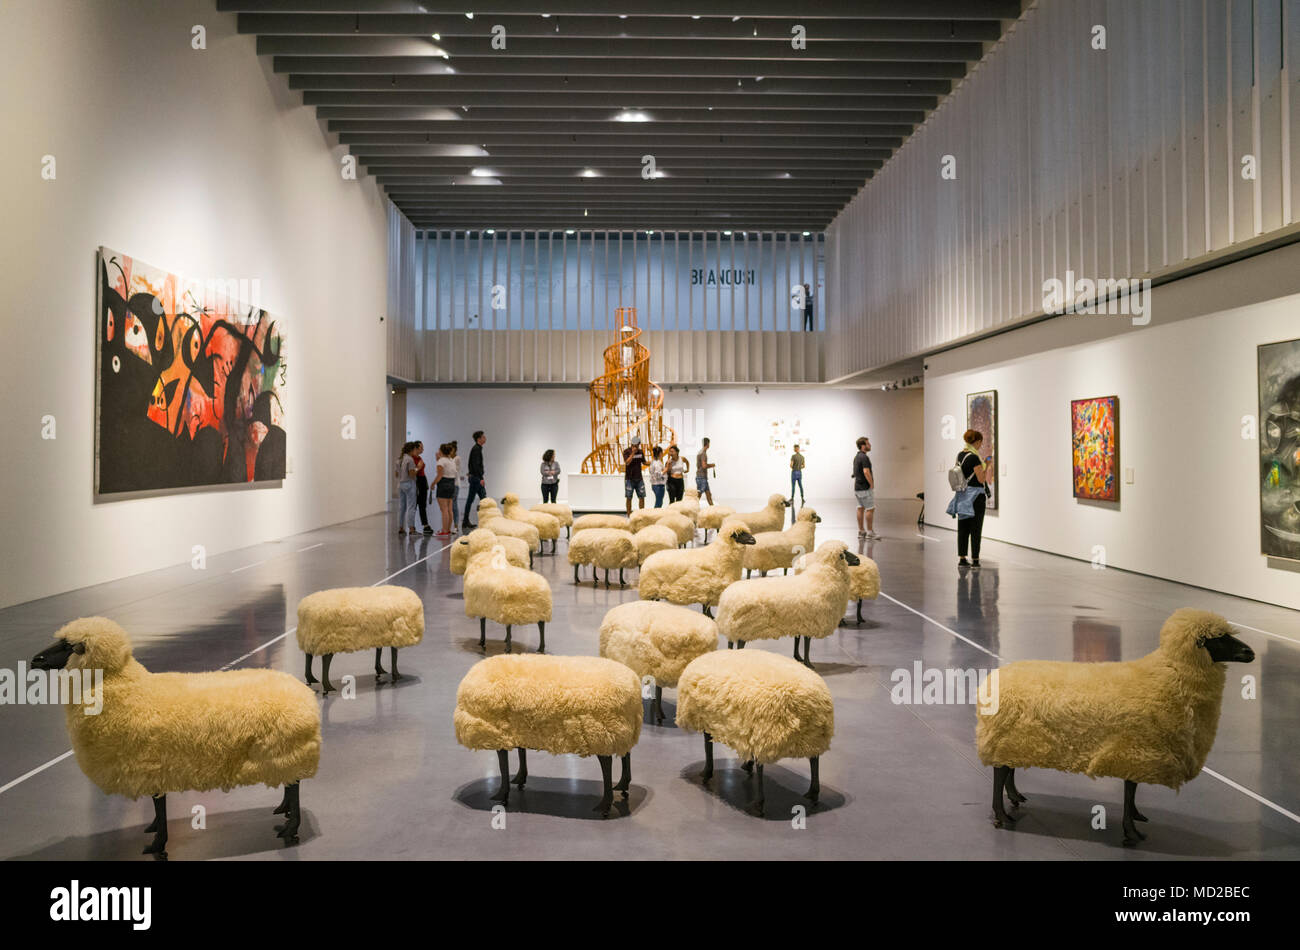 Malaga, Andalousie, Espagne : hall d'exposition principal du Centre Pompidou musée d'art moderne de Malaga inauguré en 2015, avec l'installation de troupeau Banque D'Images